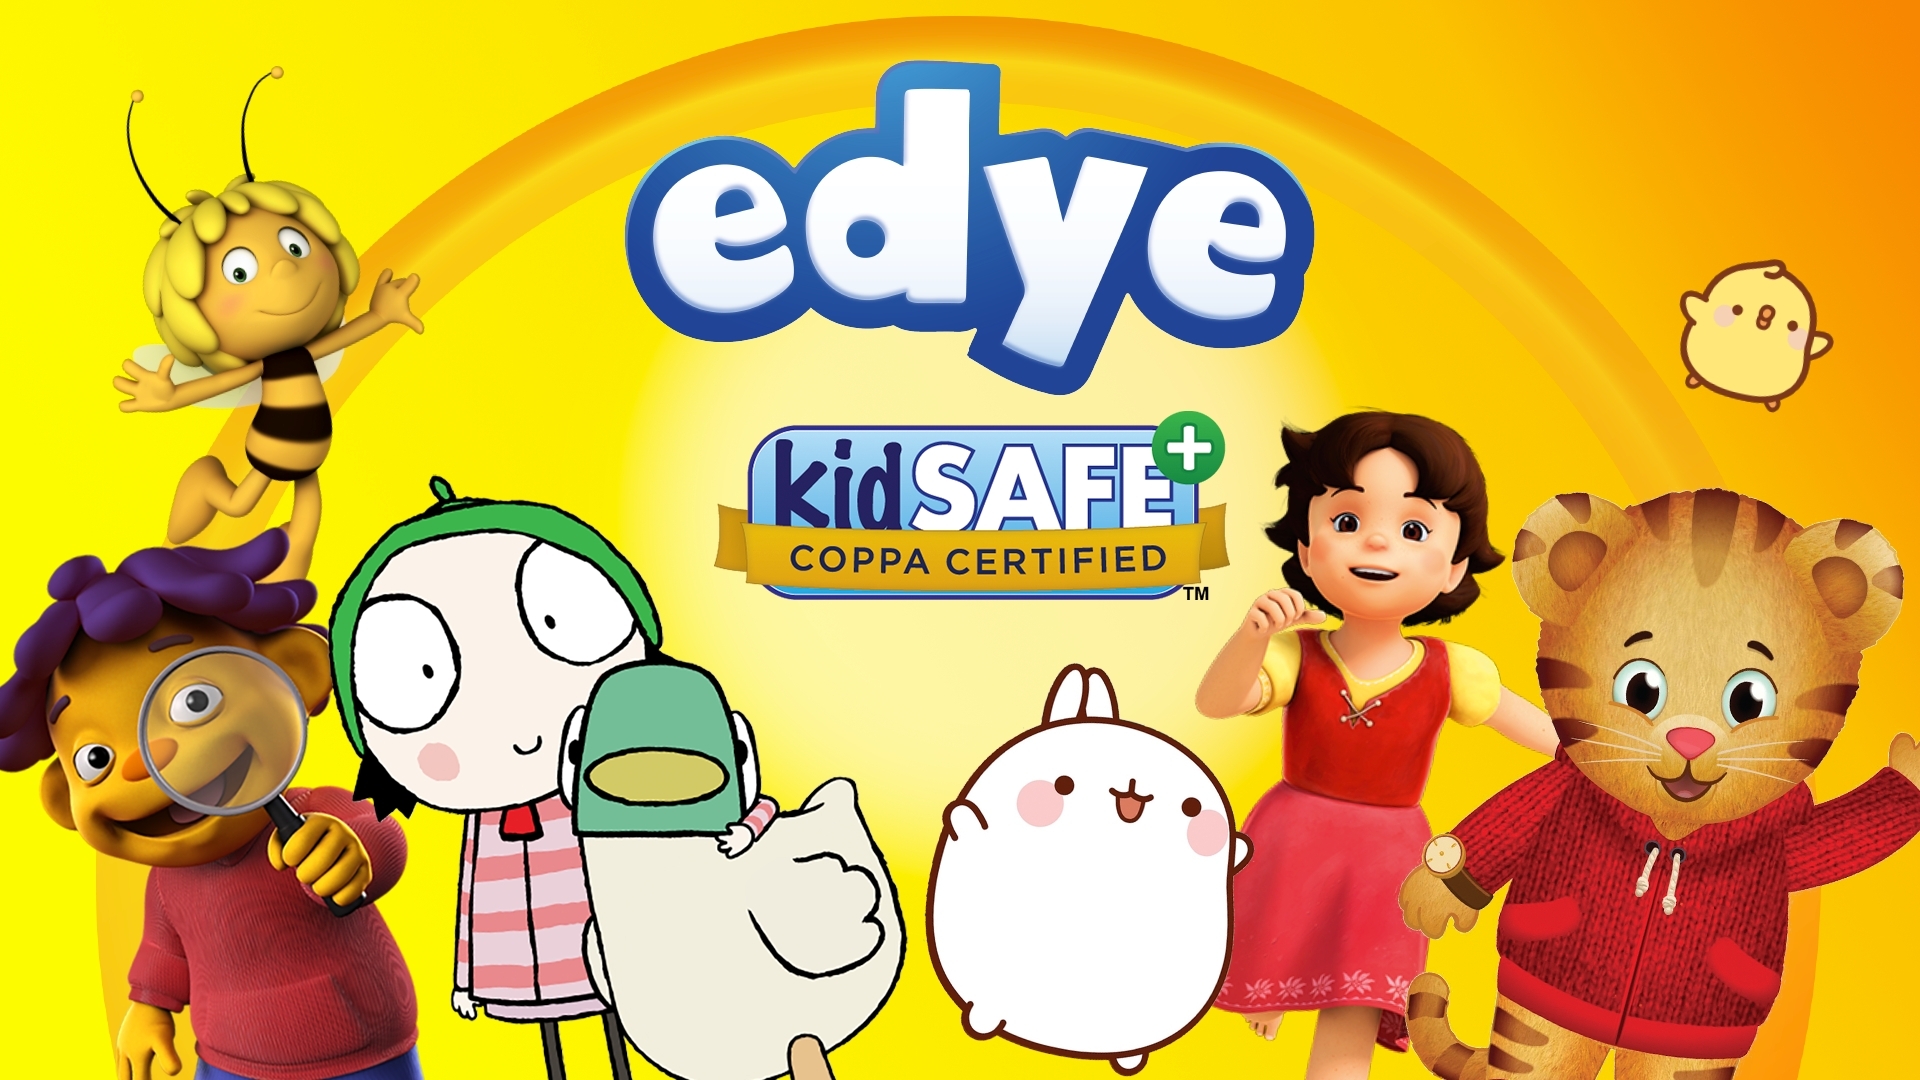 https://mms.businesswire.com/media/20210921006049/en/908529/5/EDYE-Kidsafe_certified_ad.jpg